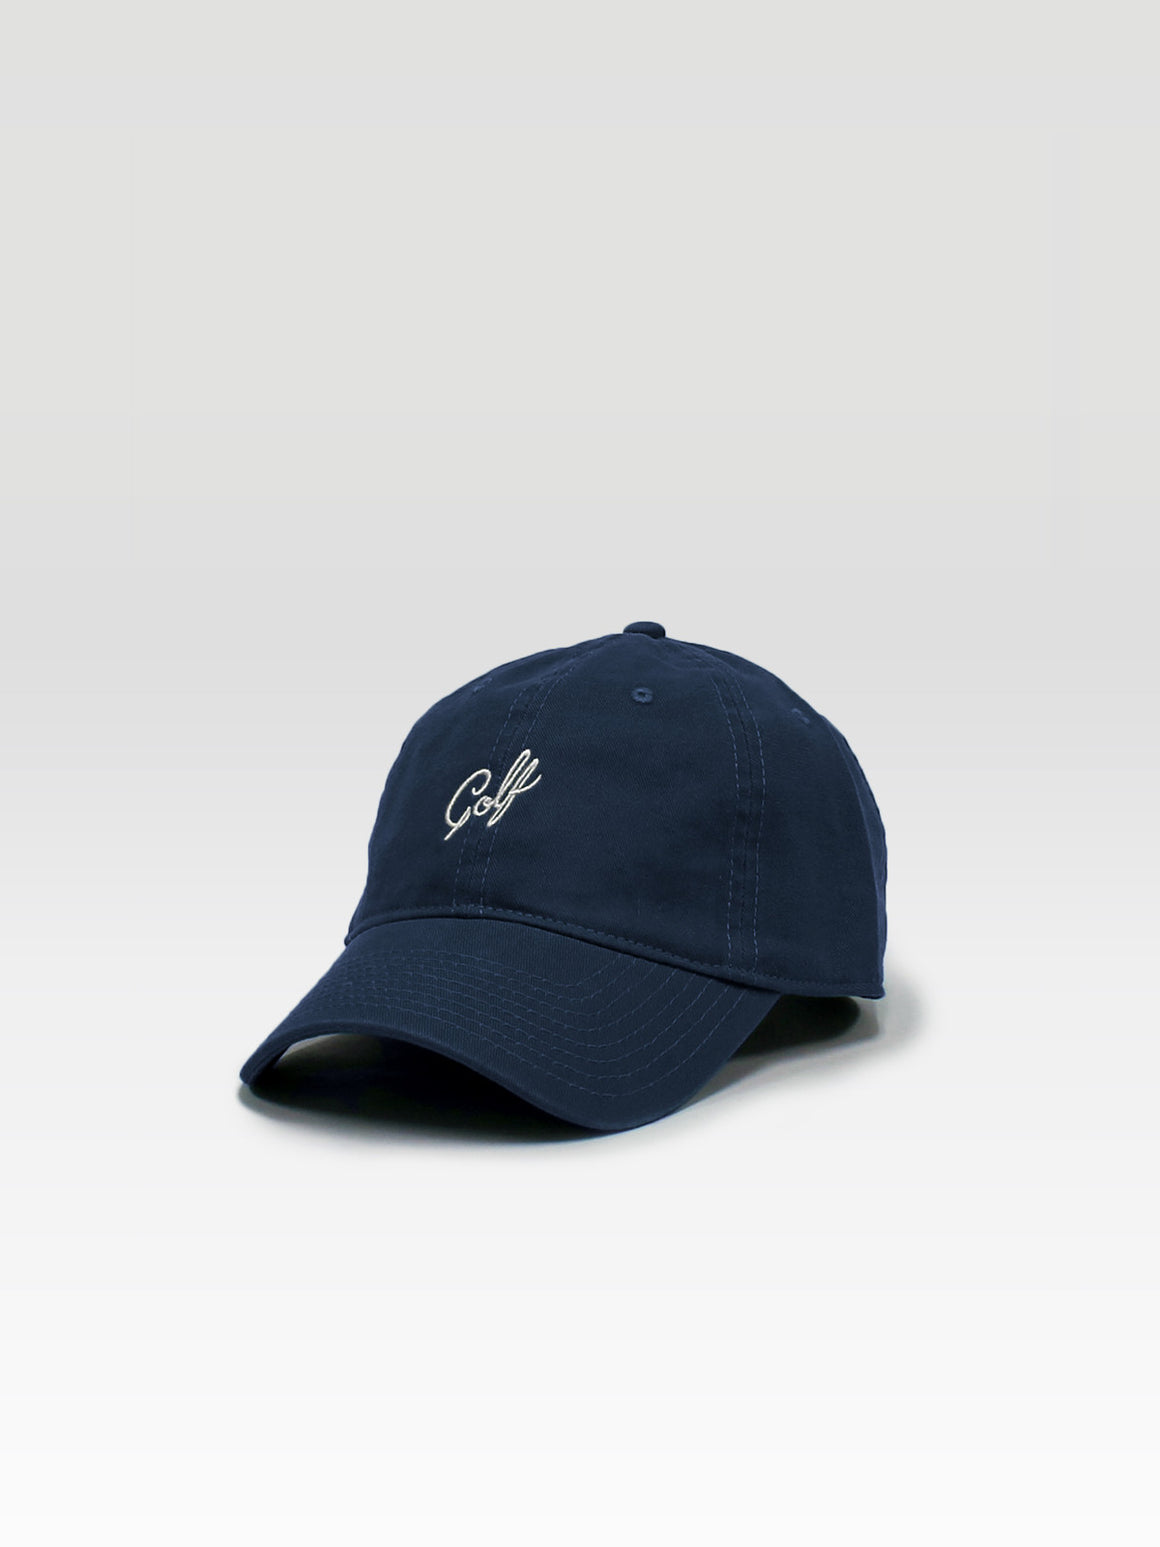 Golf Dad Hat - Navy (White)